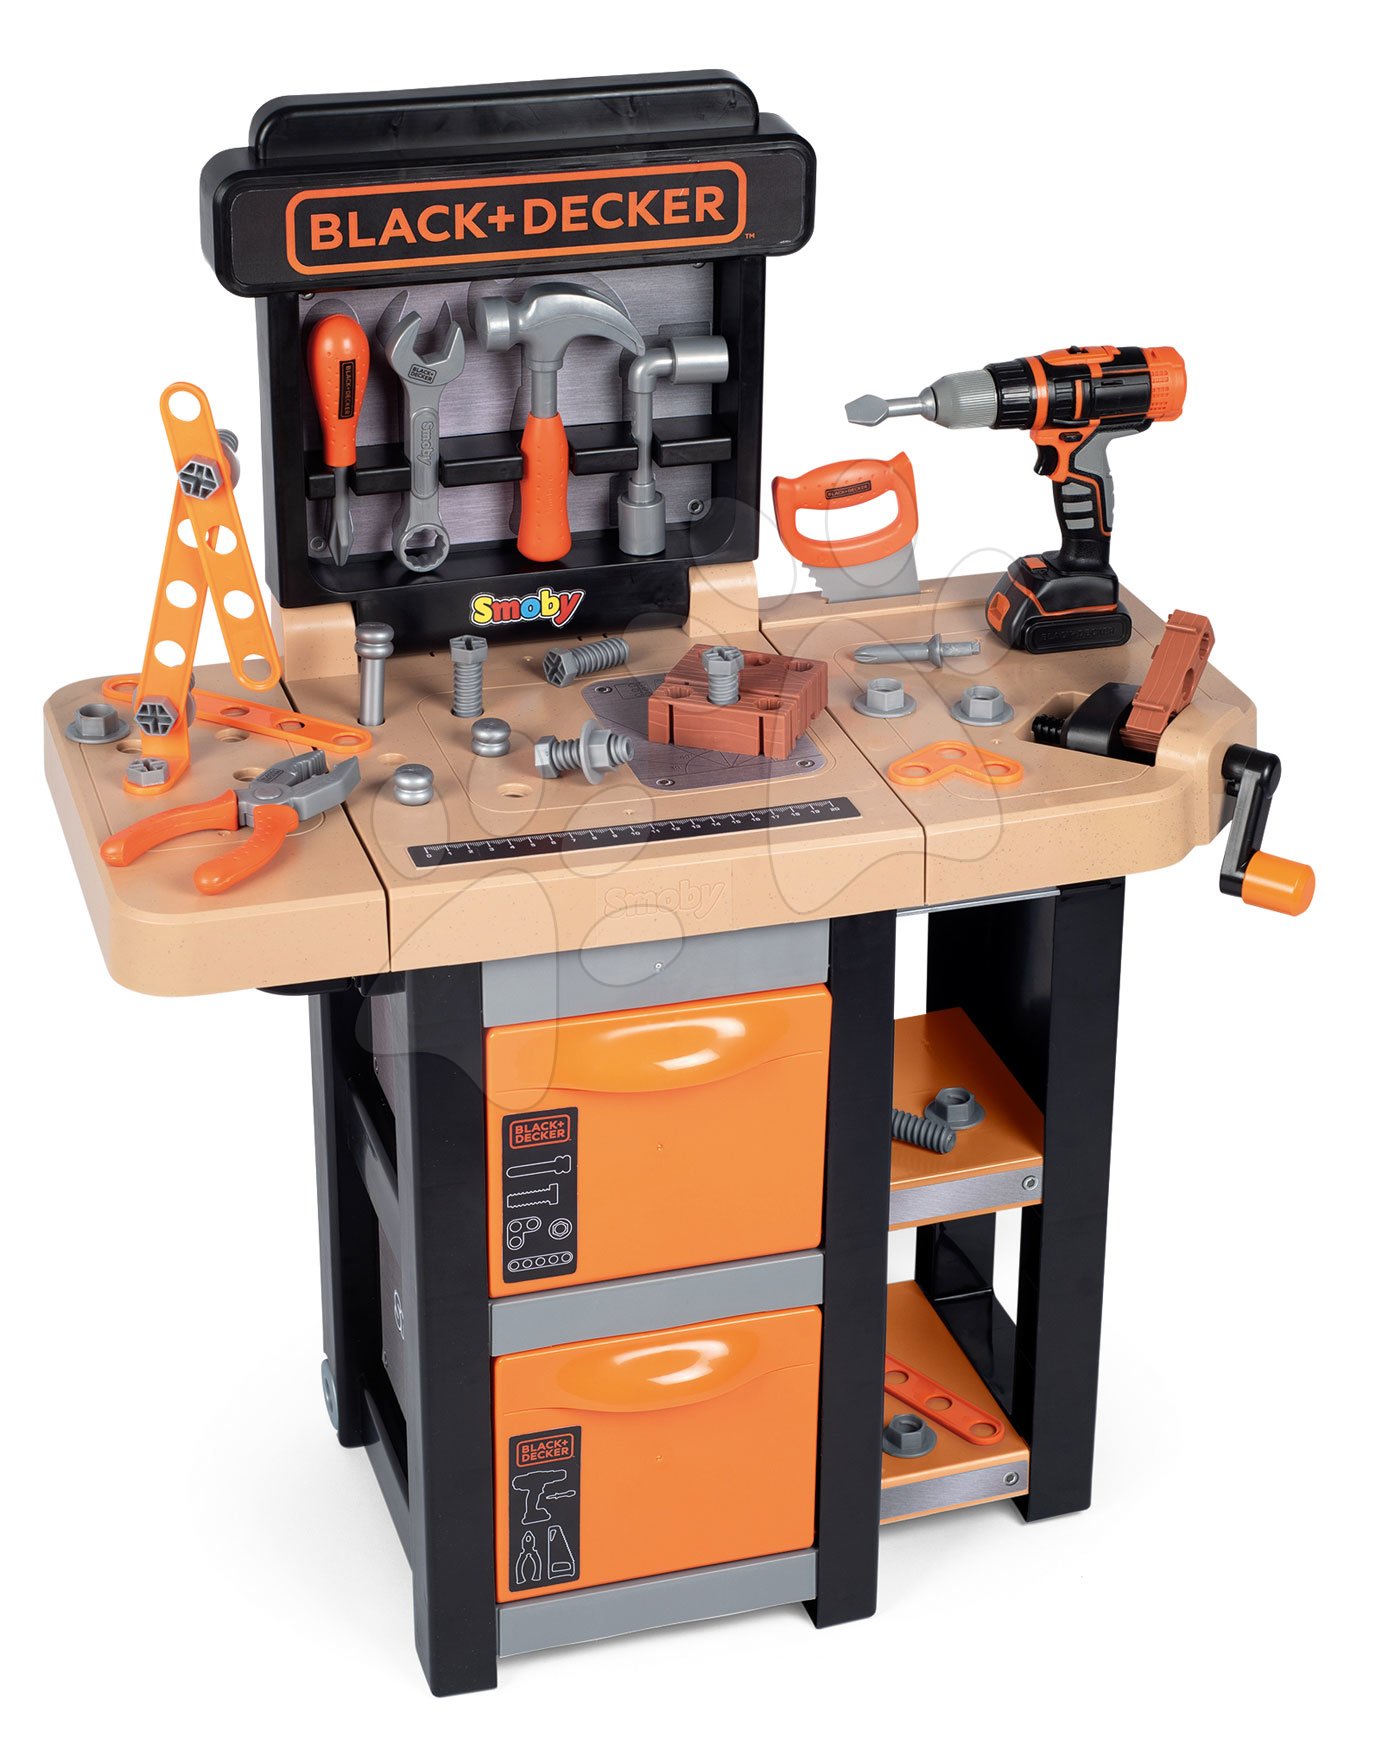 Pracovný stôl Black&Decker Open Bricolo Workbench Smoby skladací s 37 doplnkami